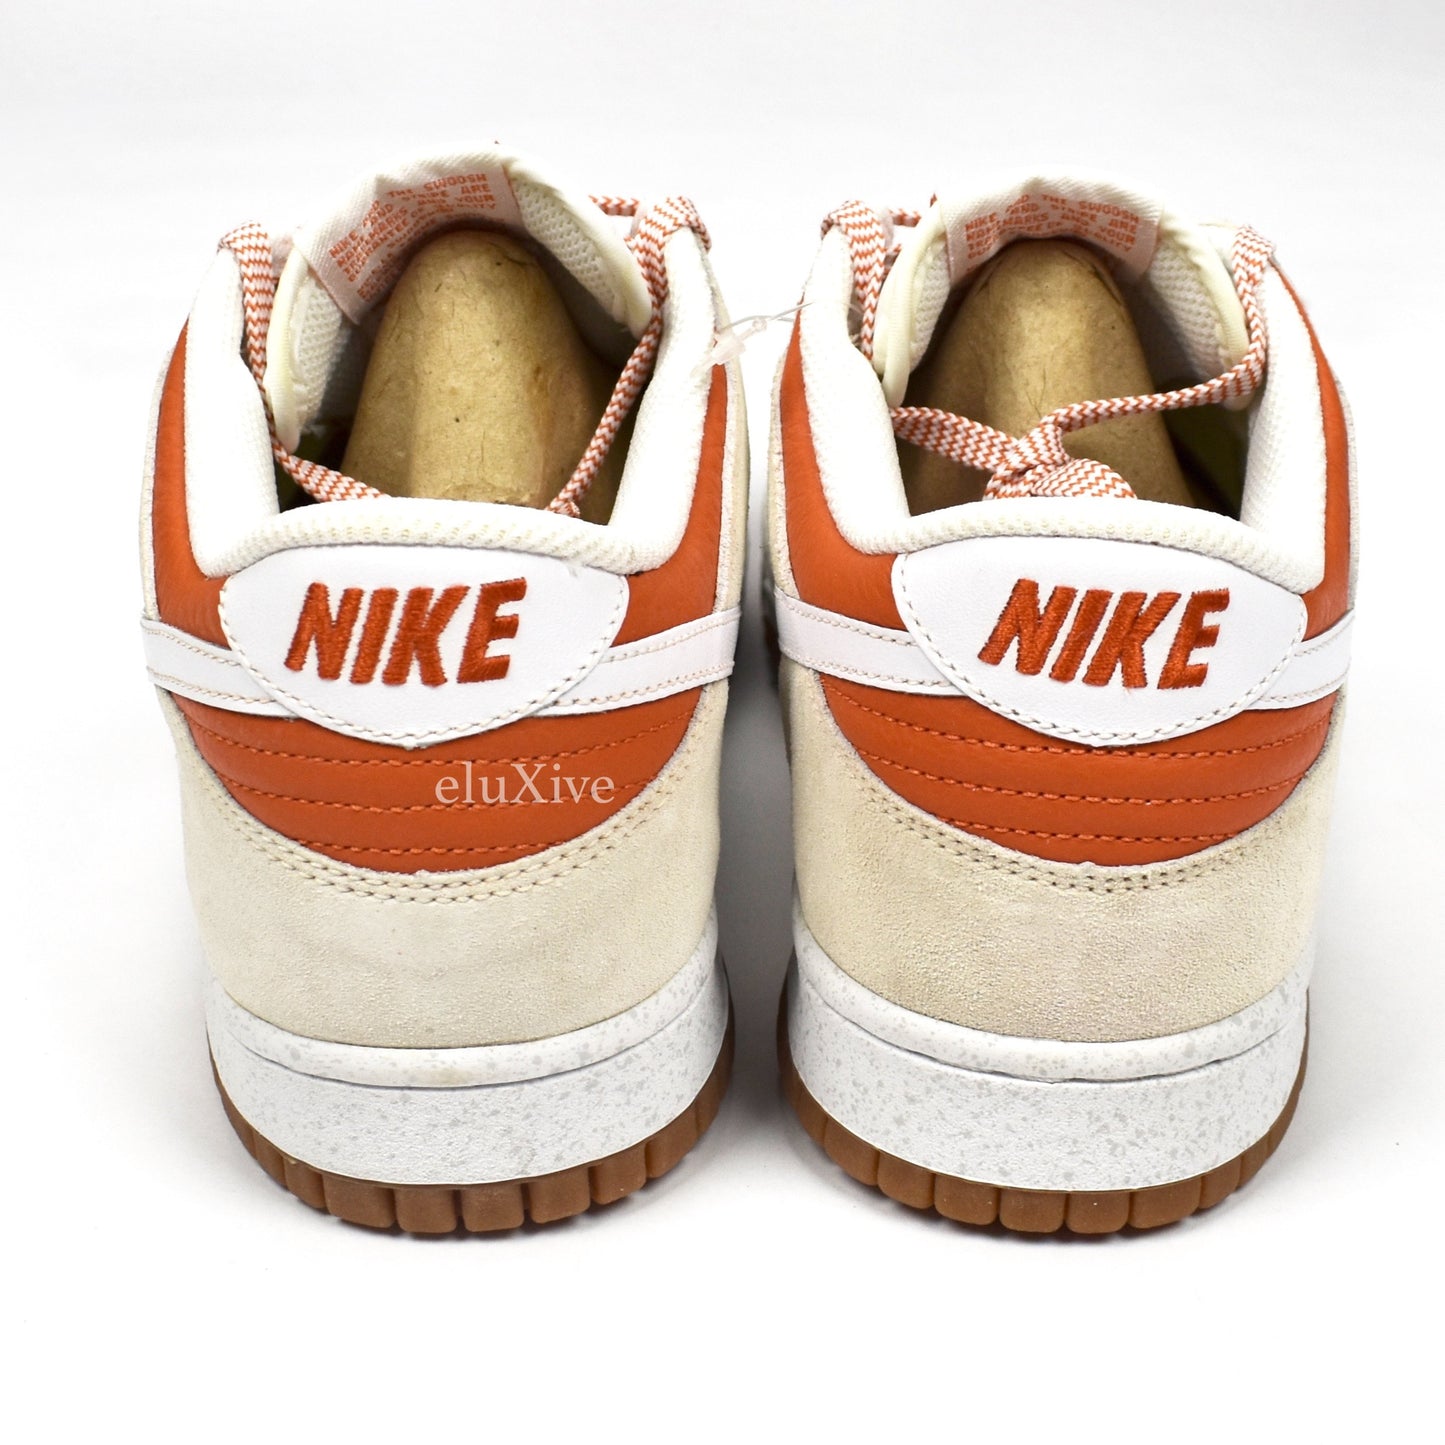 Nike - Dunk Low CL 'Hoop Orange'